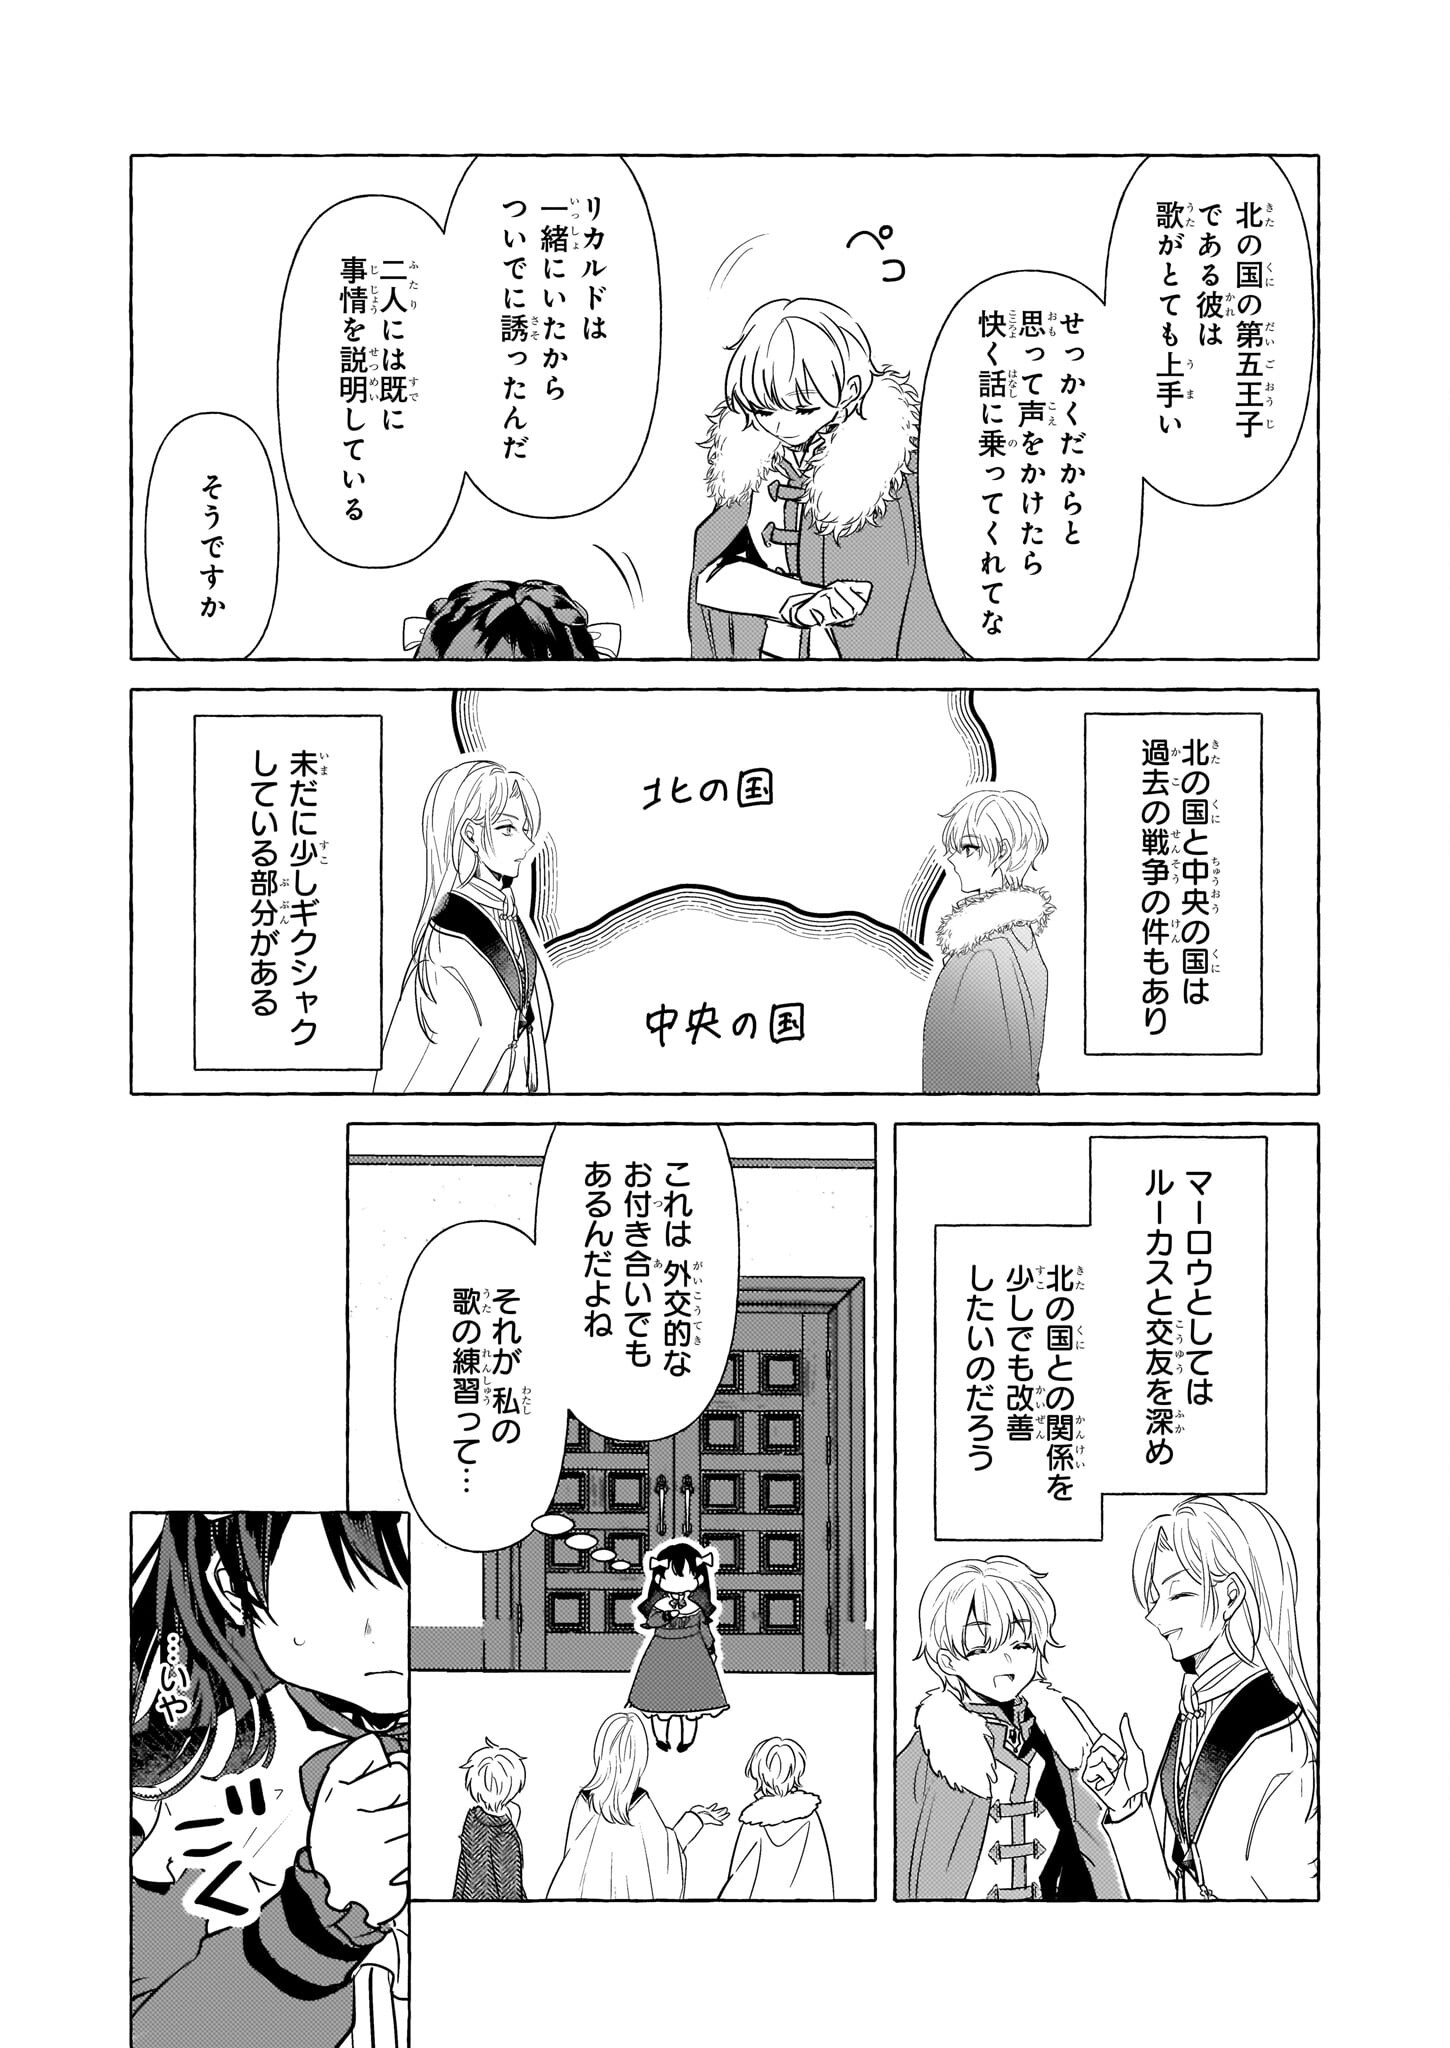 Tenseisaki ga Shoujo Manga no Shirobuta Reijou datta reBoooot! - Chapter 17 - Page 25